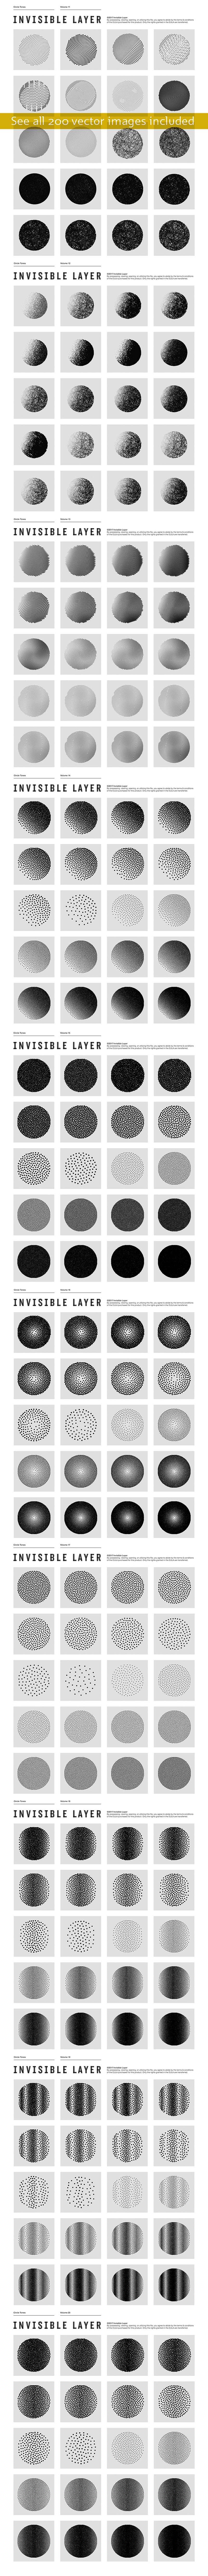 200种半色调圆形图案AI矢量素材 图片素材 第5张